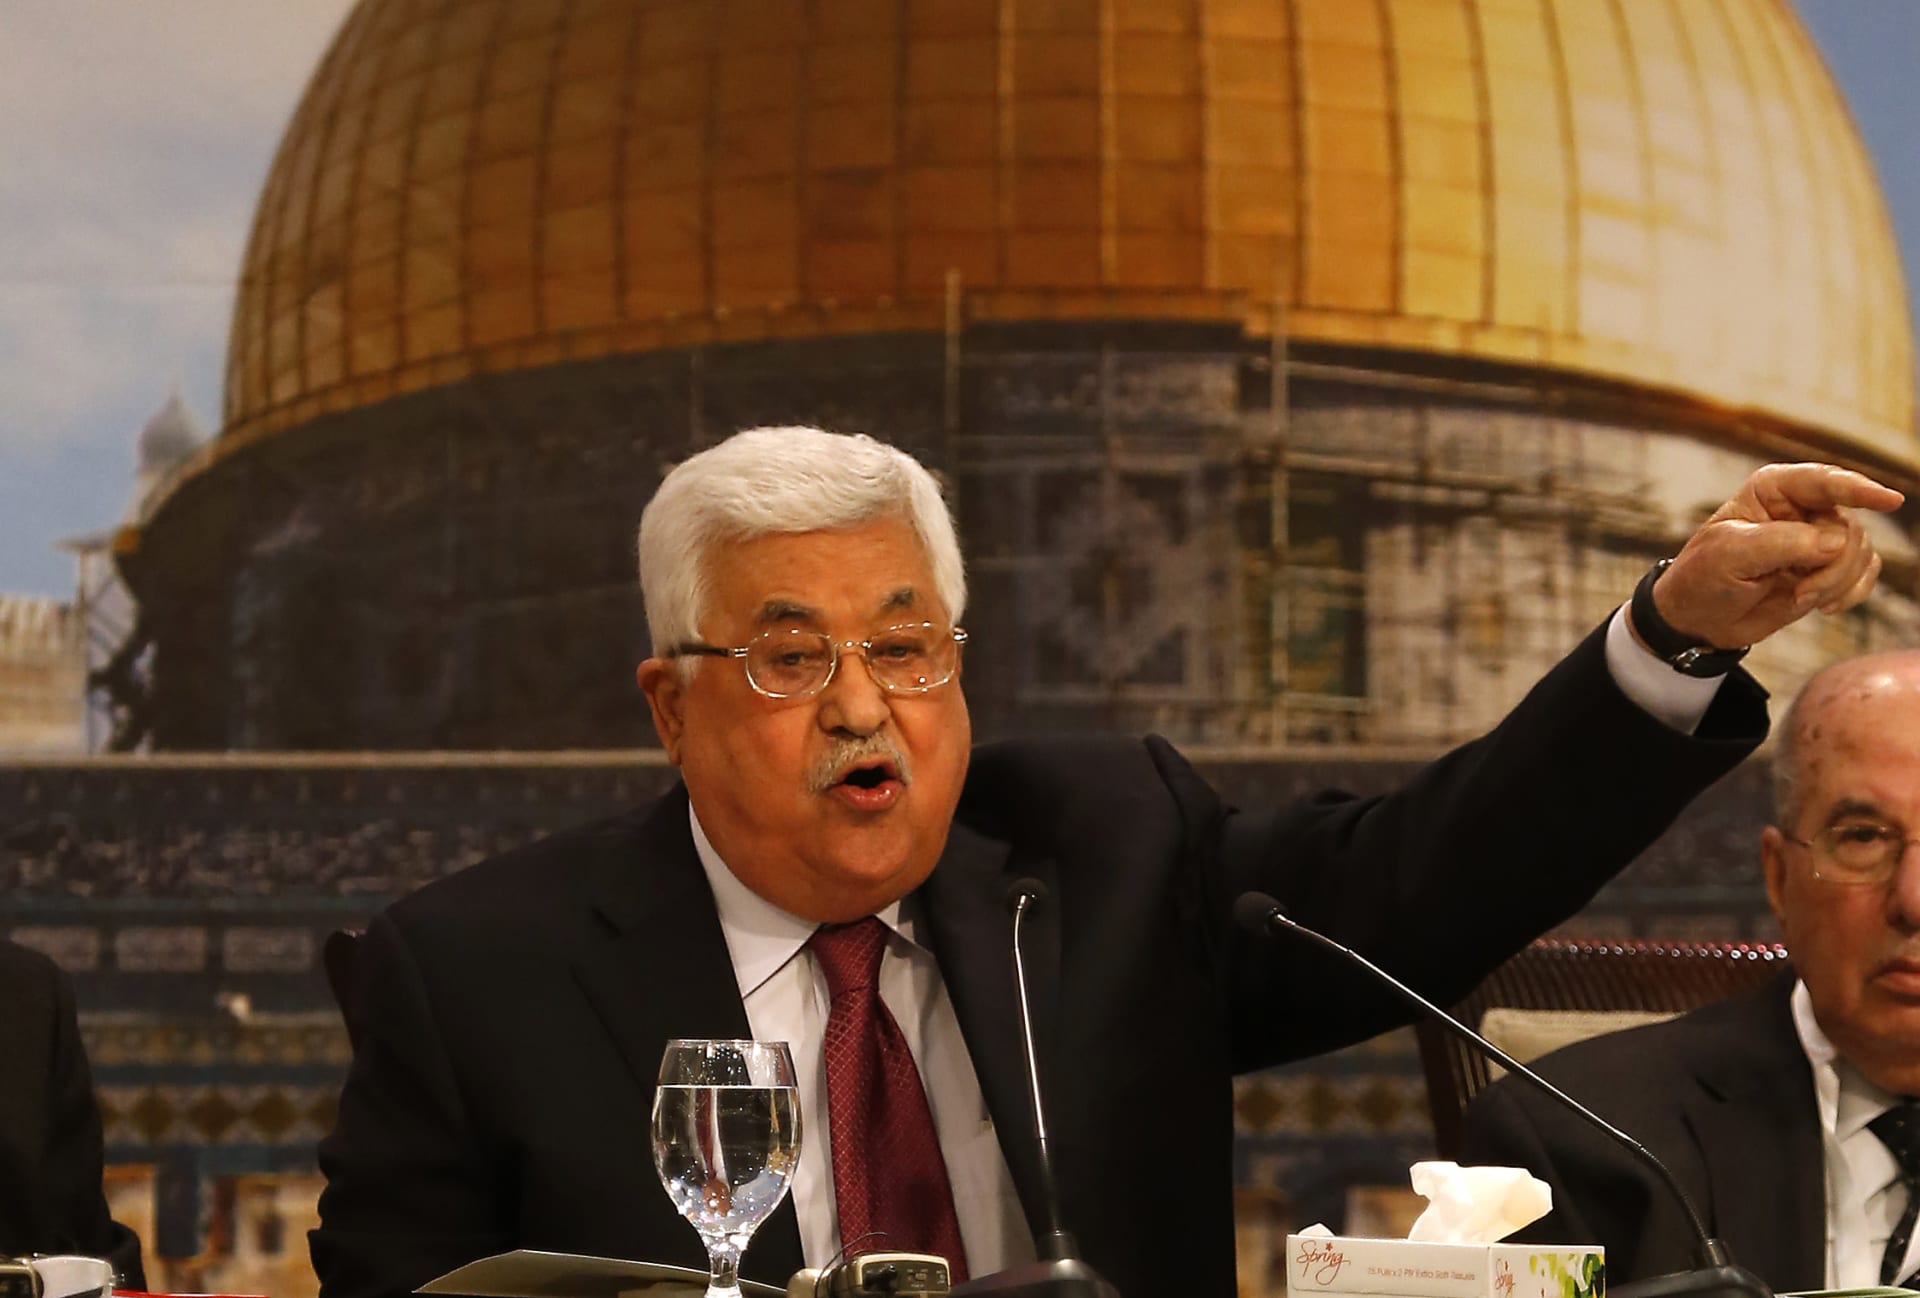 بعد تصريحاته عن اليهود.. هجوم شرس على محمود عباس واتهامه بـ"معاداة السامية"